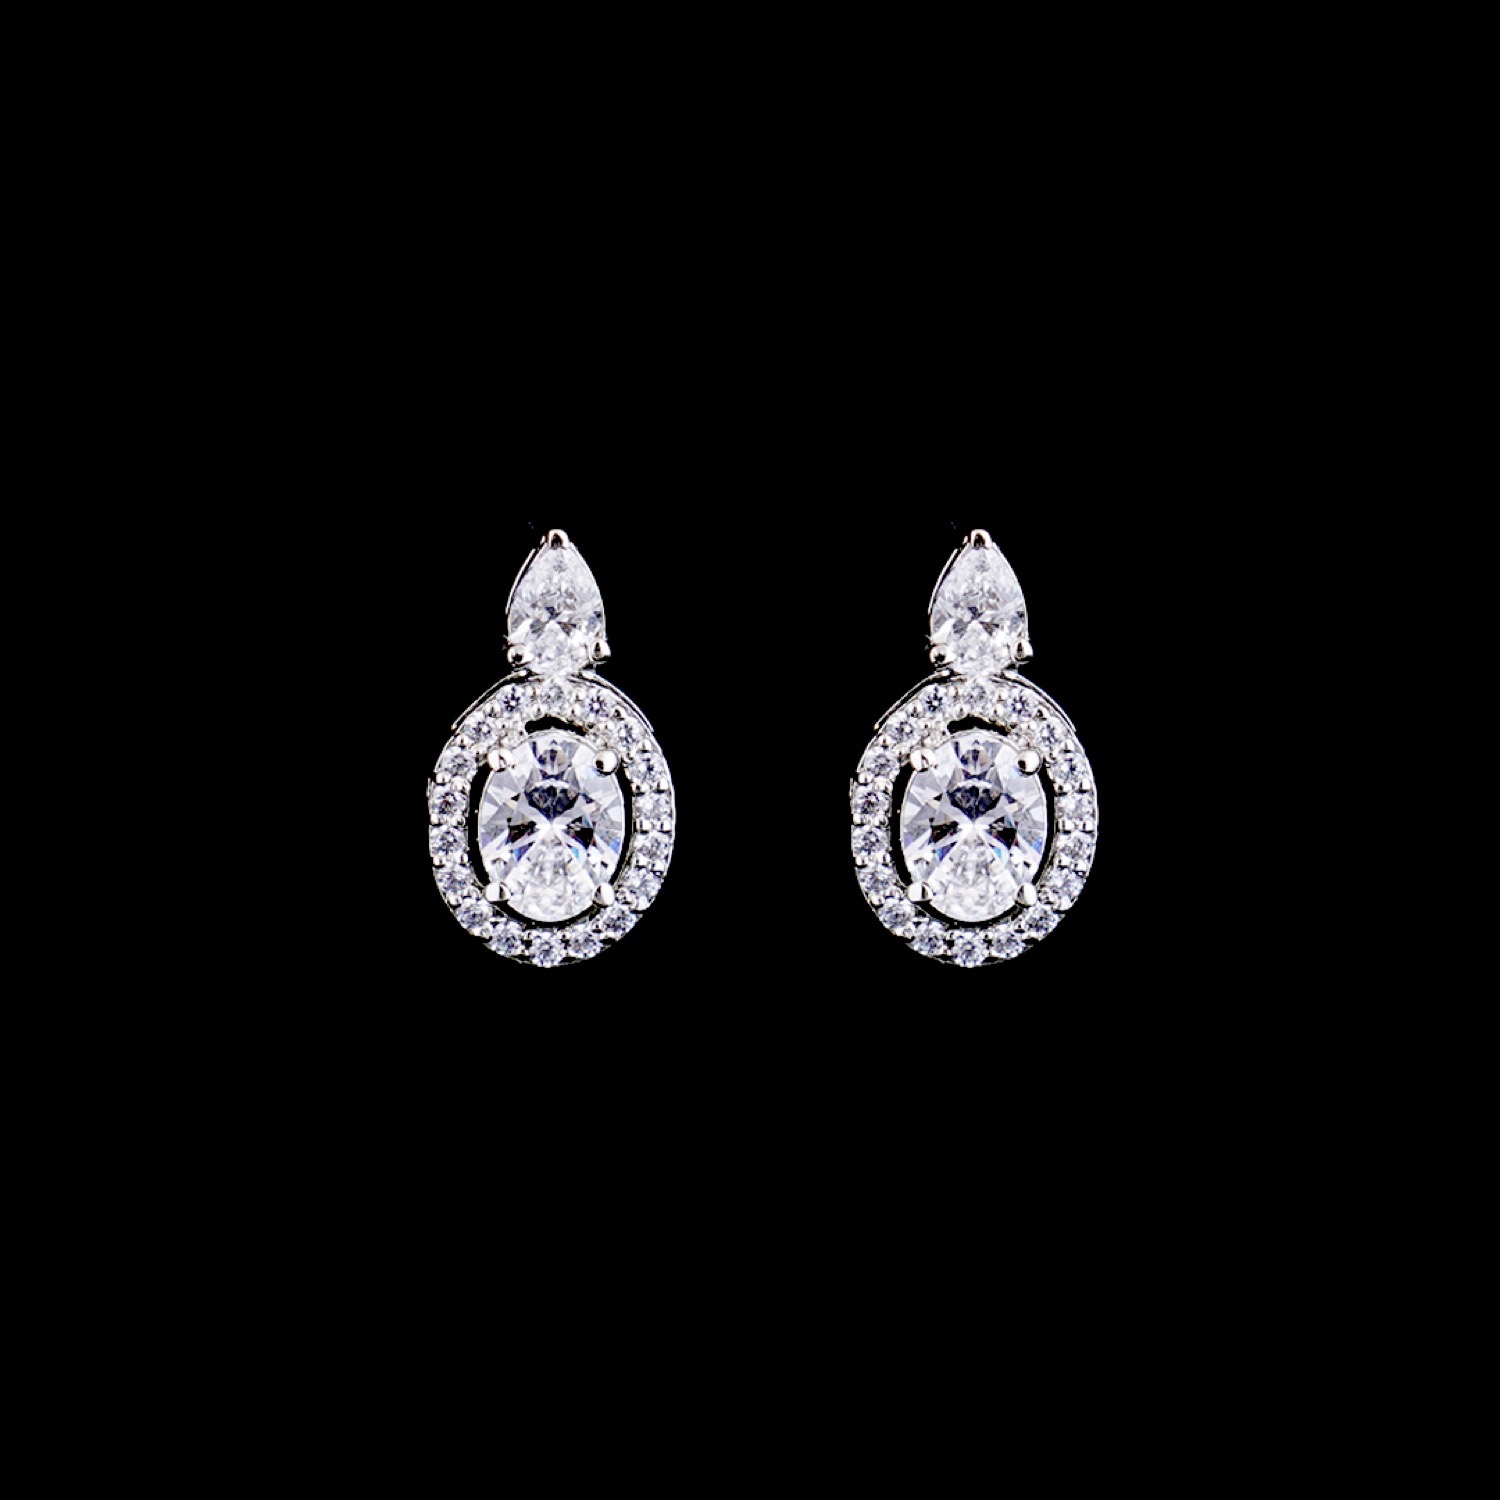 varam_swarovski_white_stone_oval_design_silver_earrings_38-1